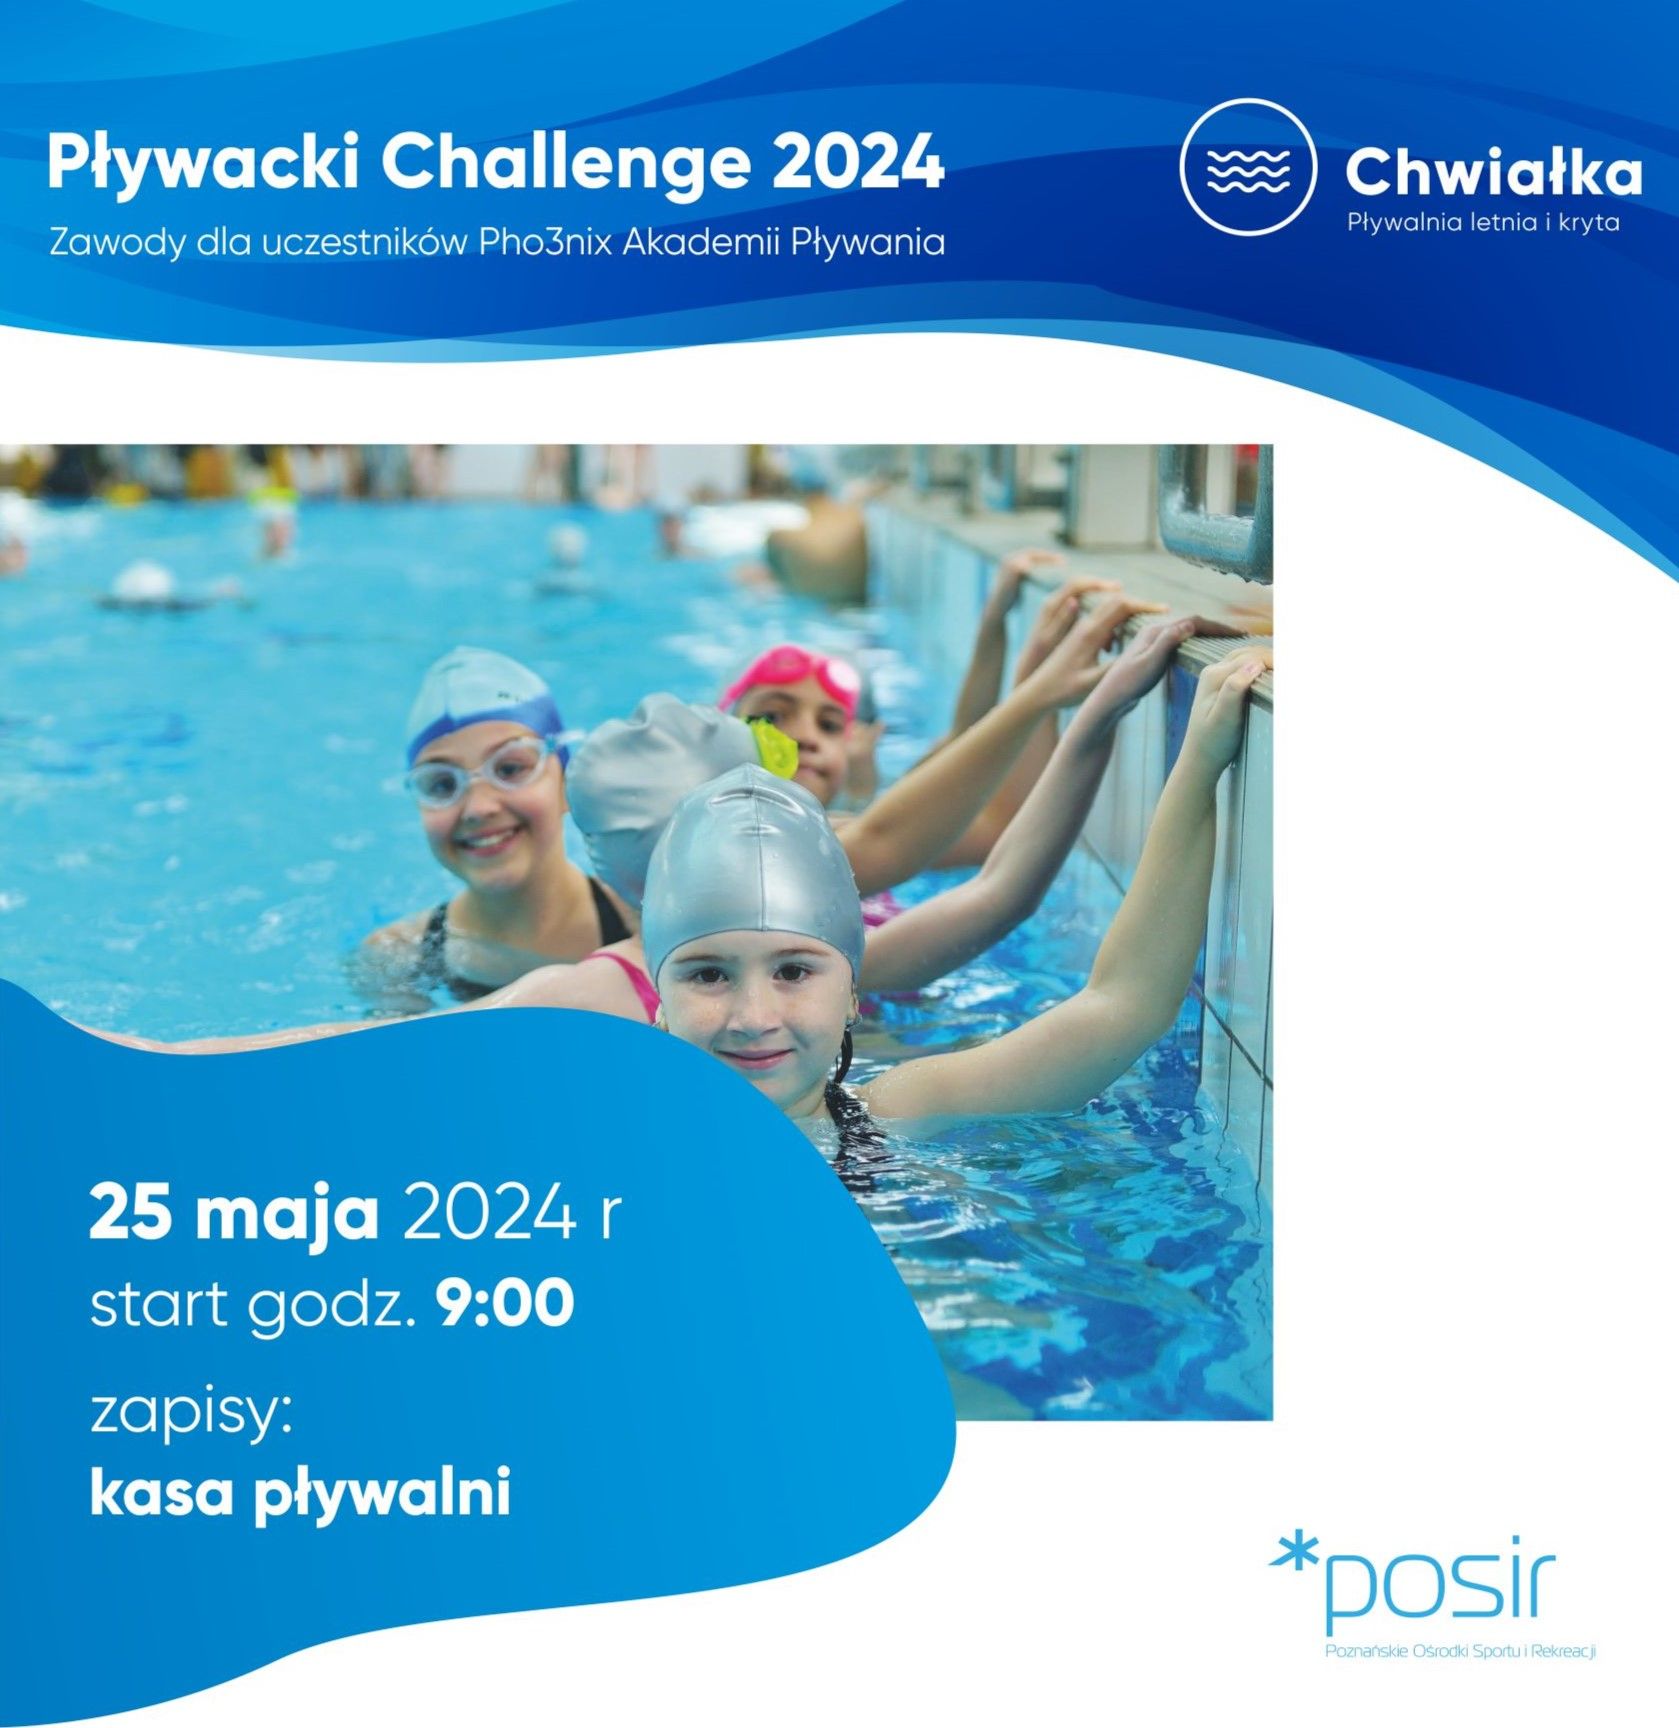 Pływacki Challenge 2024 na Chwiałce